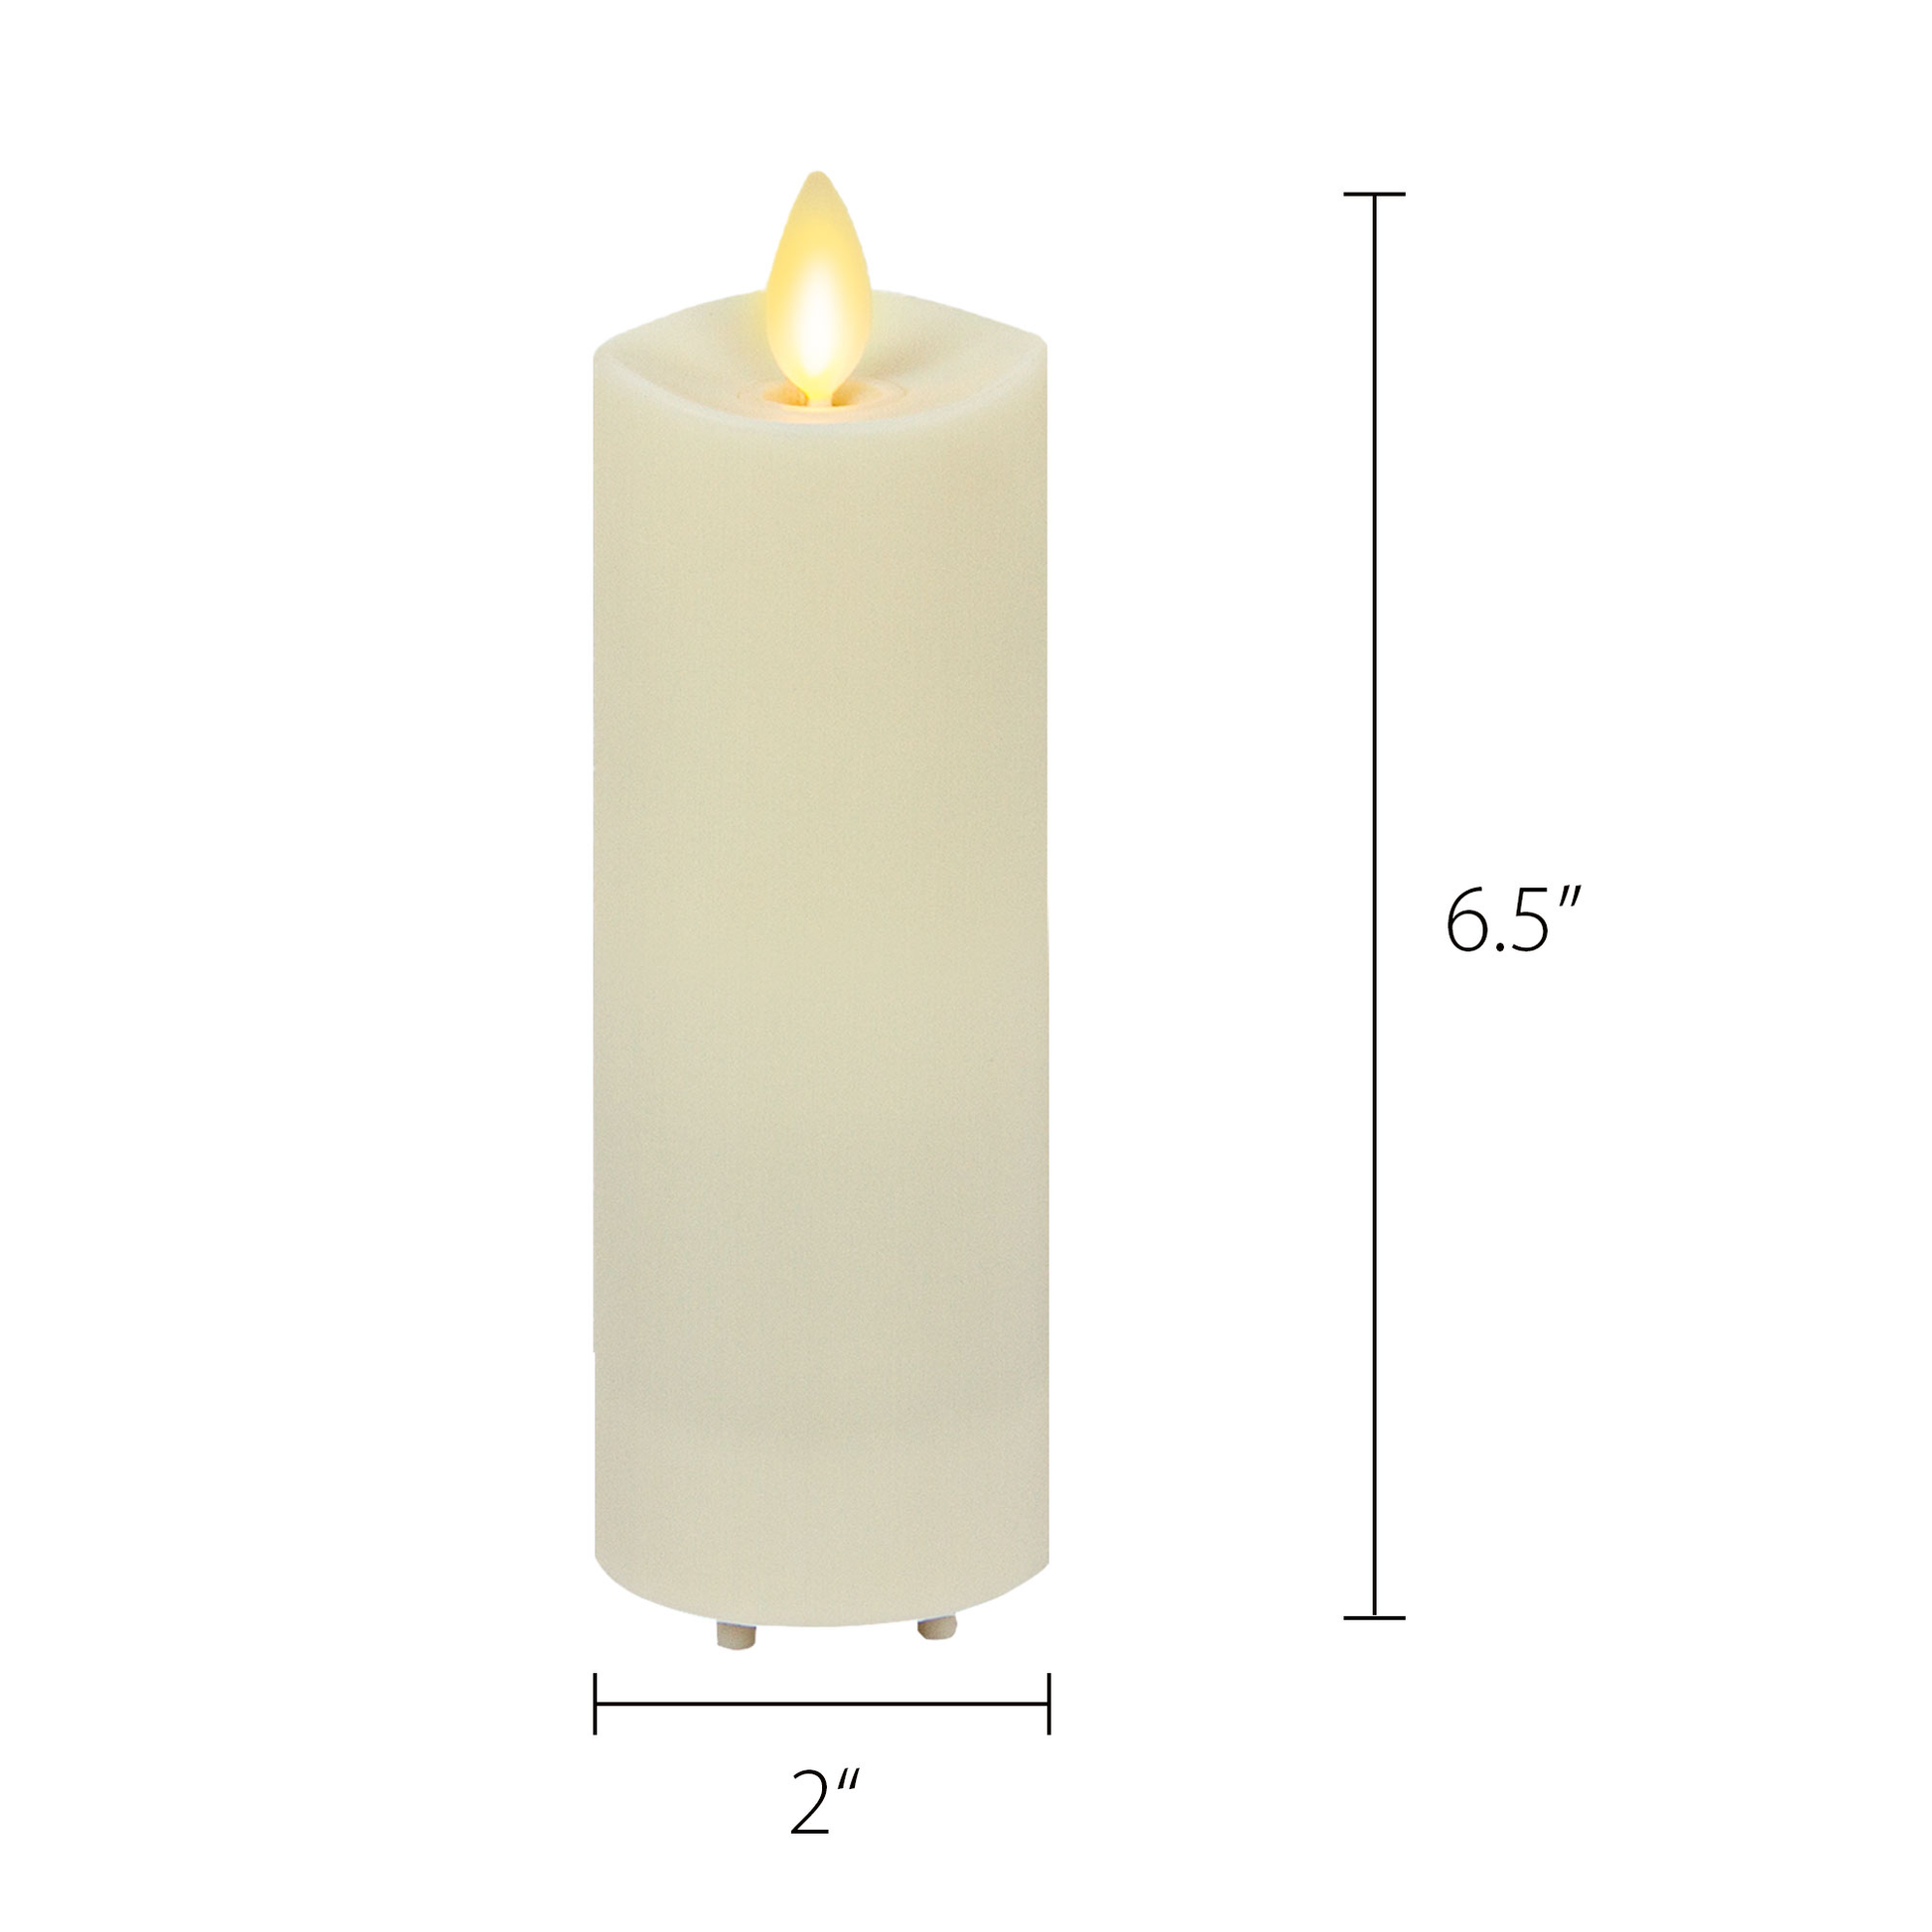 Flameless Gold Glitter Candle Pillar w/ Flame-Effect, Luminara